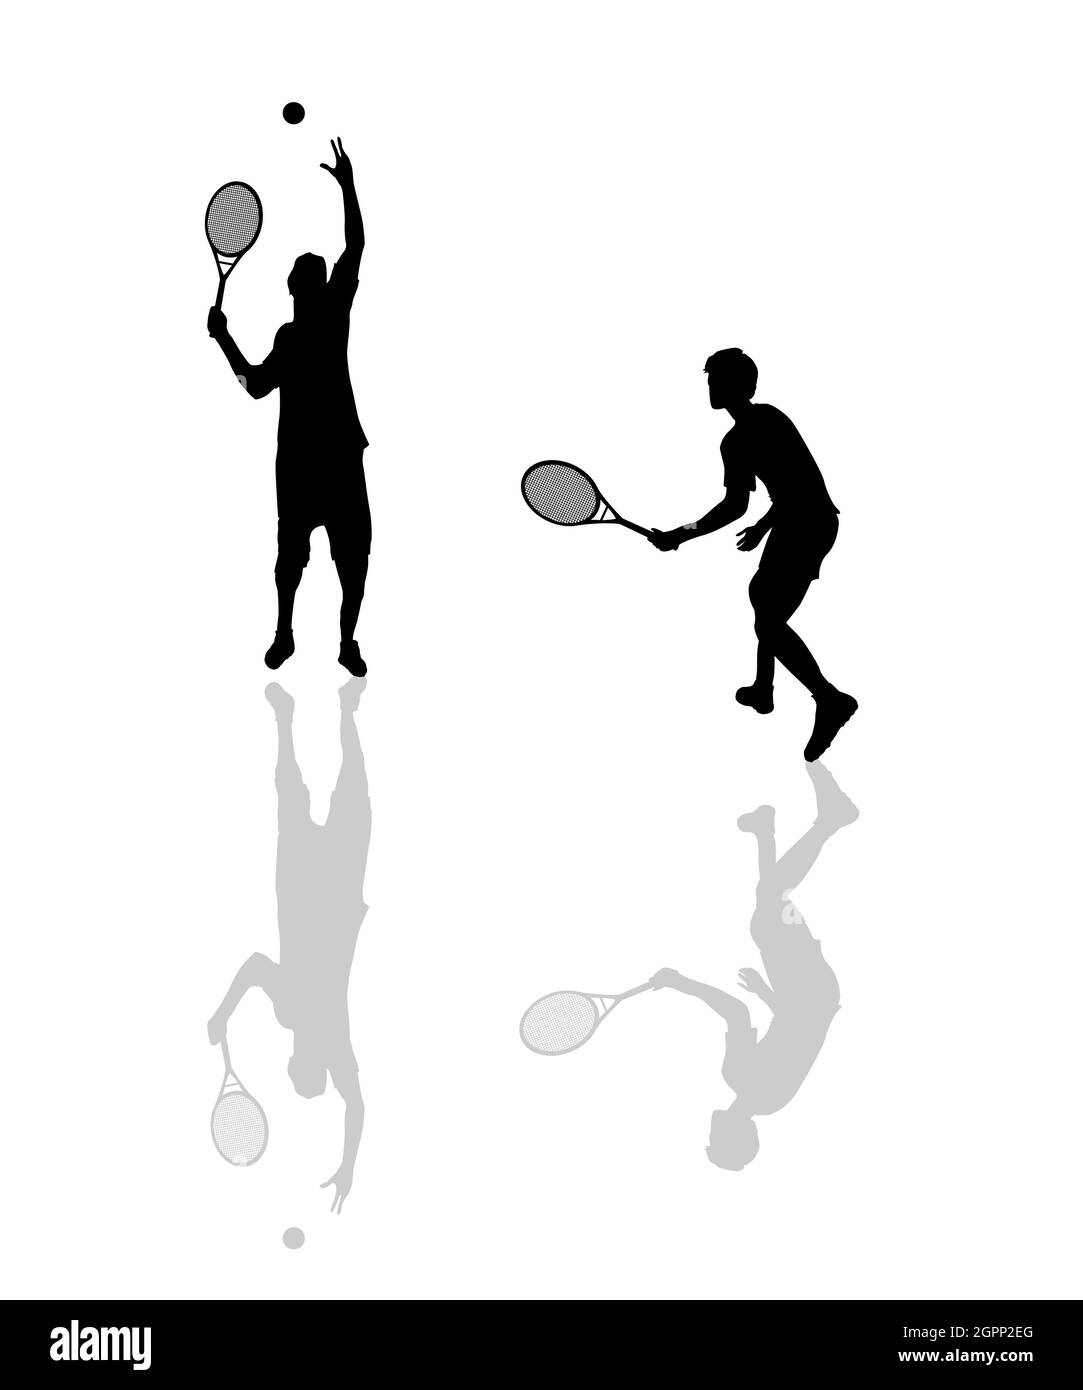 Les joueurs de tennis silhouettes Illustration de Vecteur